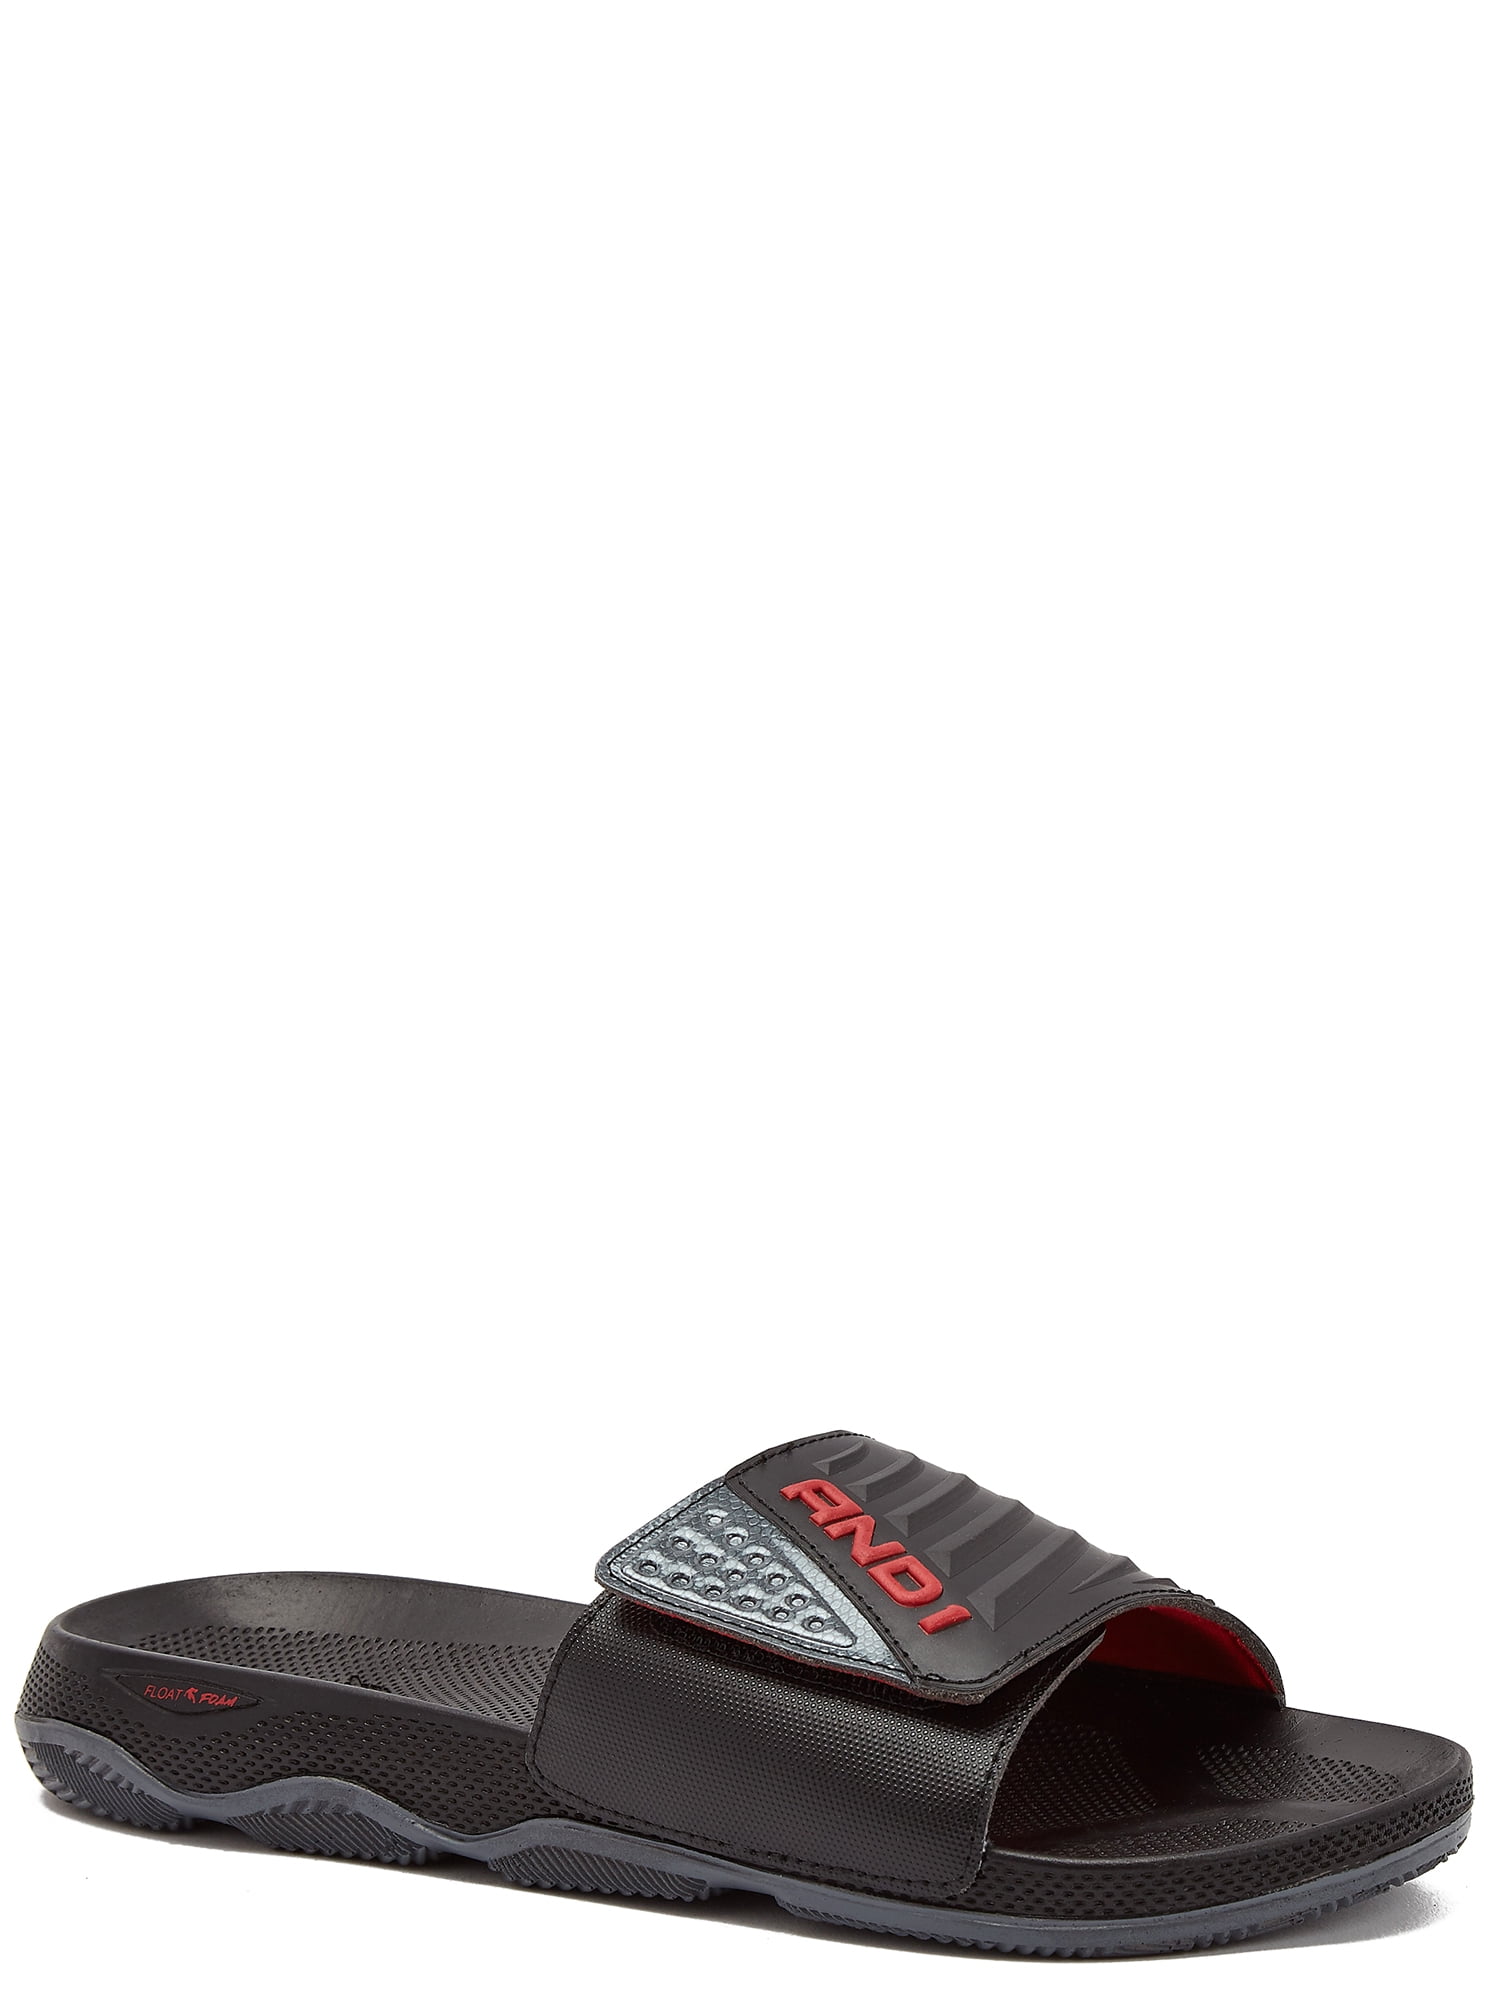 AND1 Men's Swish 2.0 Adjustable Slide Sandals - Walmart.com